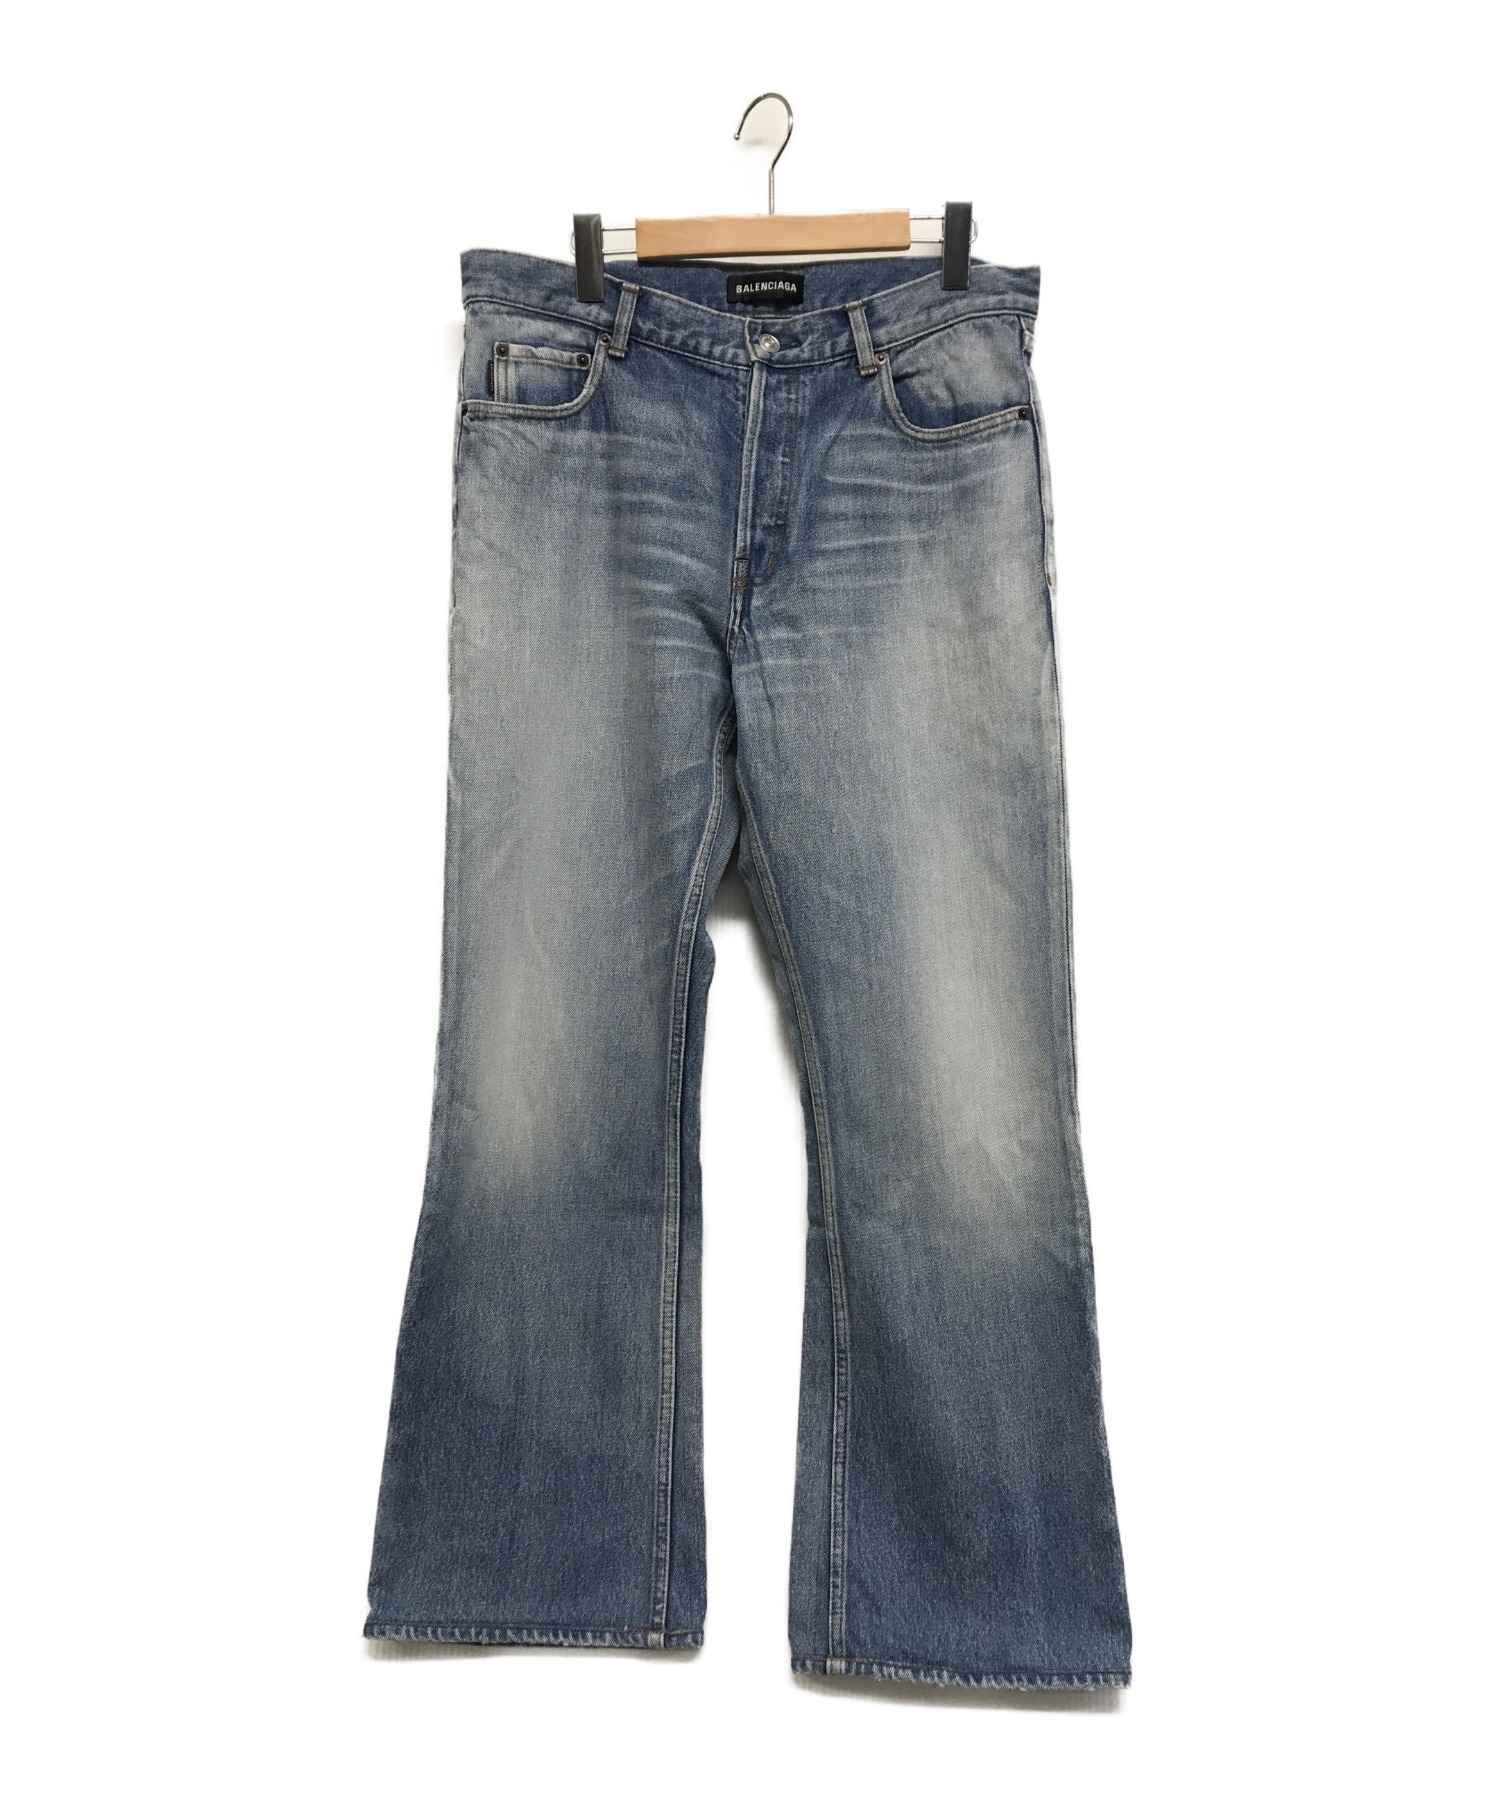 BALENCIAGA (バレンシアガ) Bootcut Jeans インディゴ サイズ:31 2018AWモデル